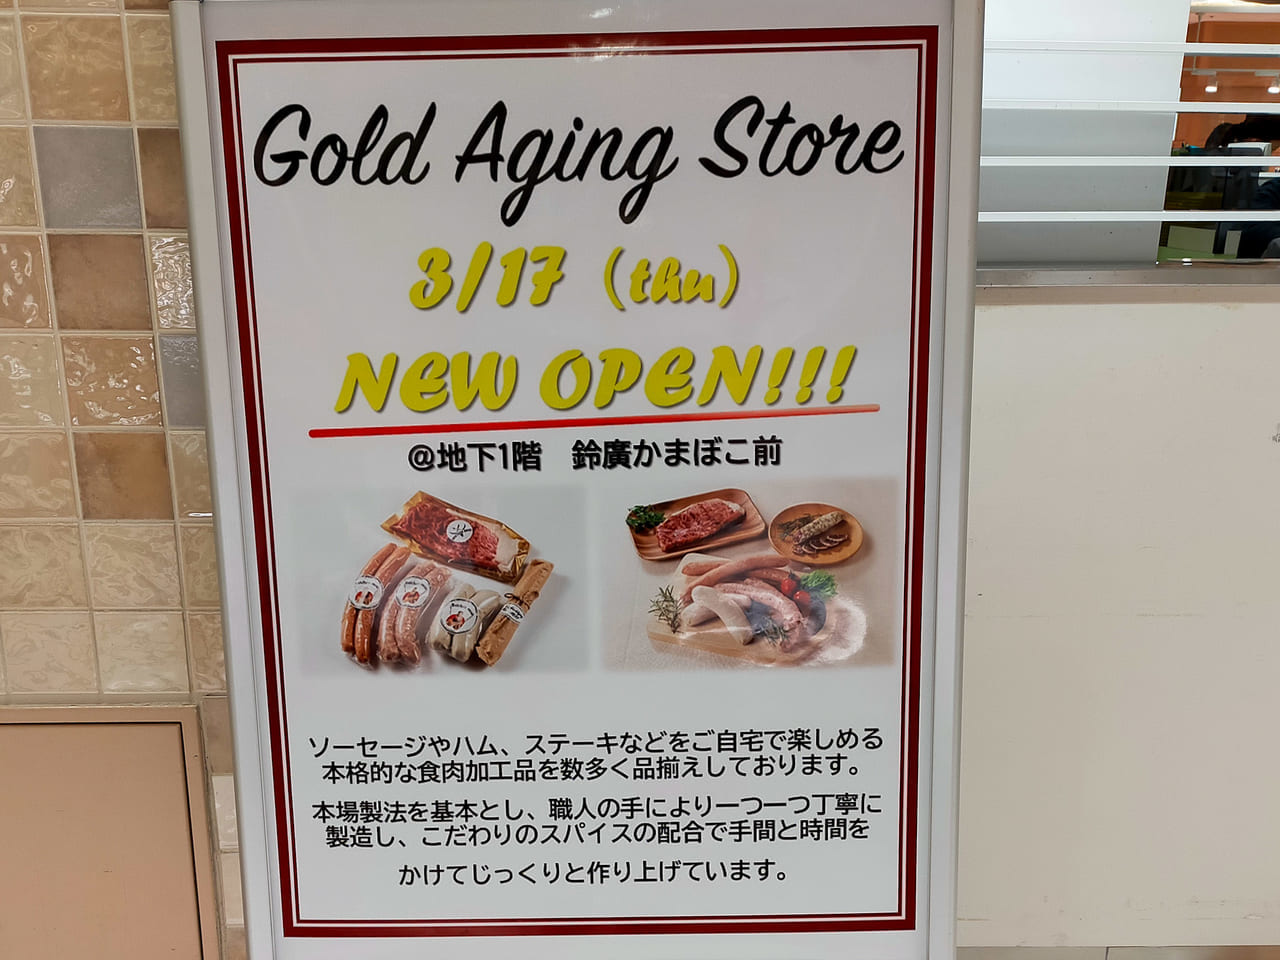 「ゴールドステーキハウス」が手がける「Gold Aging Store」がラスカ平塚に3月17日（木）にオープンします！